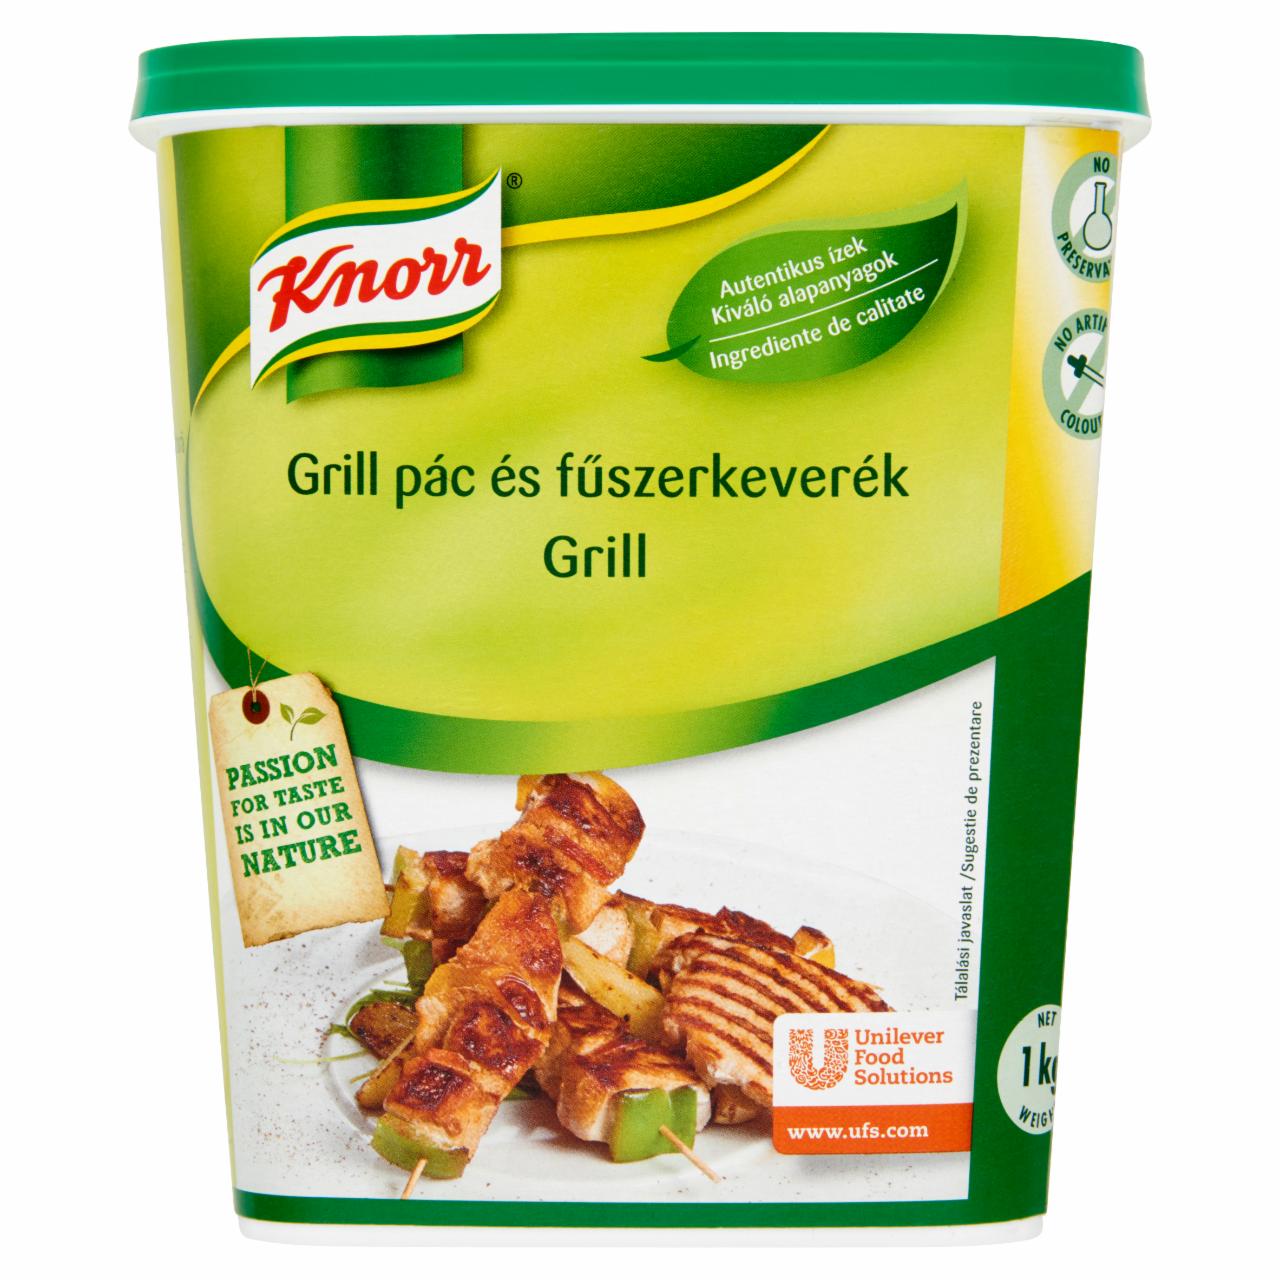 Képek - Knorr Grill pác és fűszerkeverék 1 kg